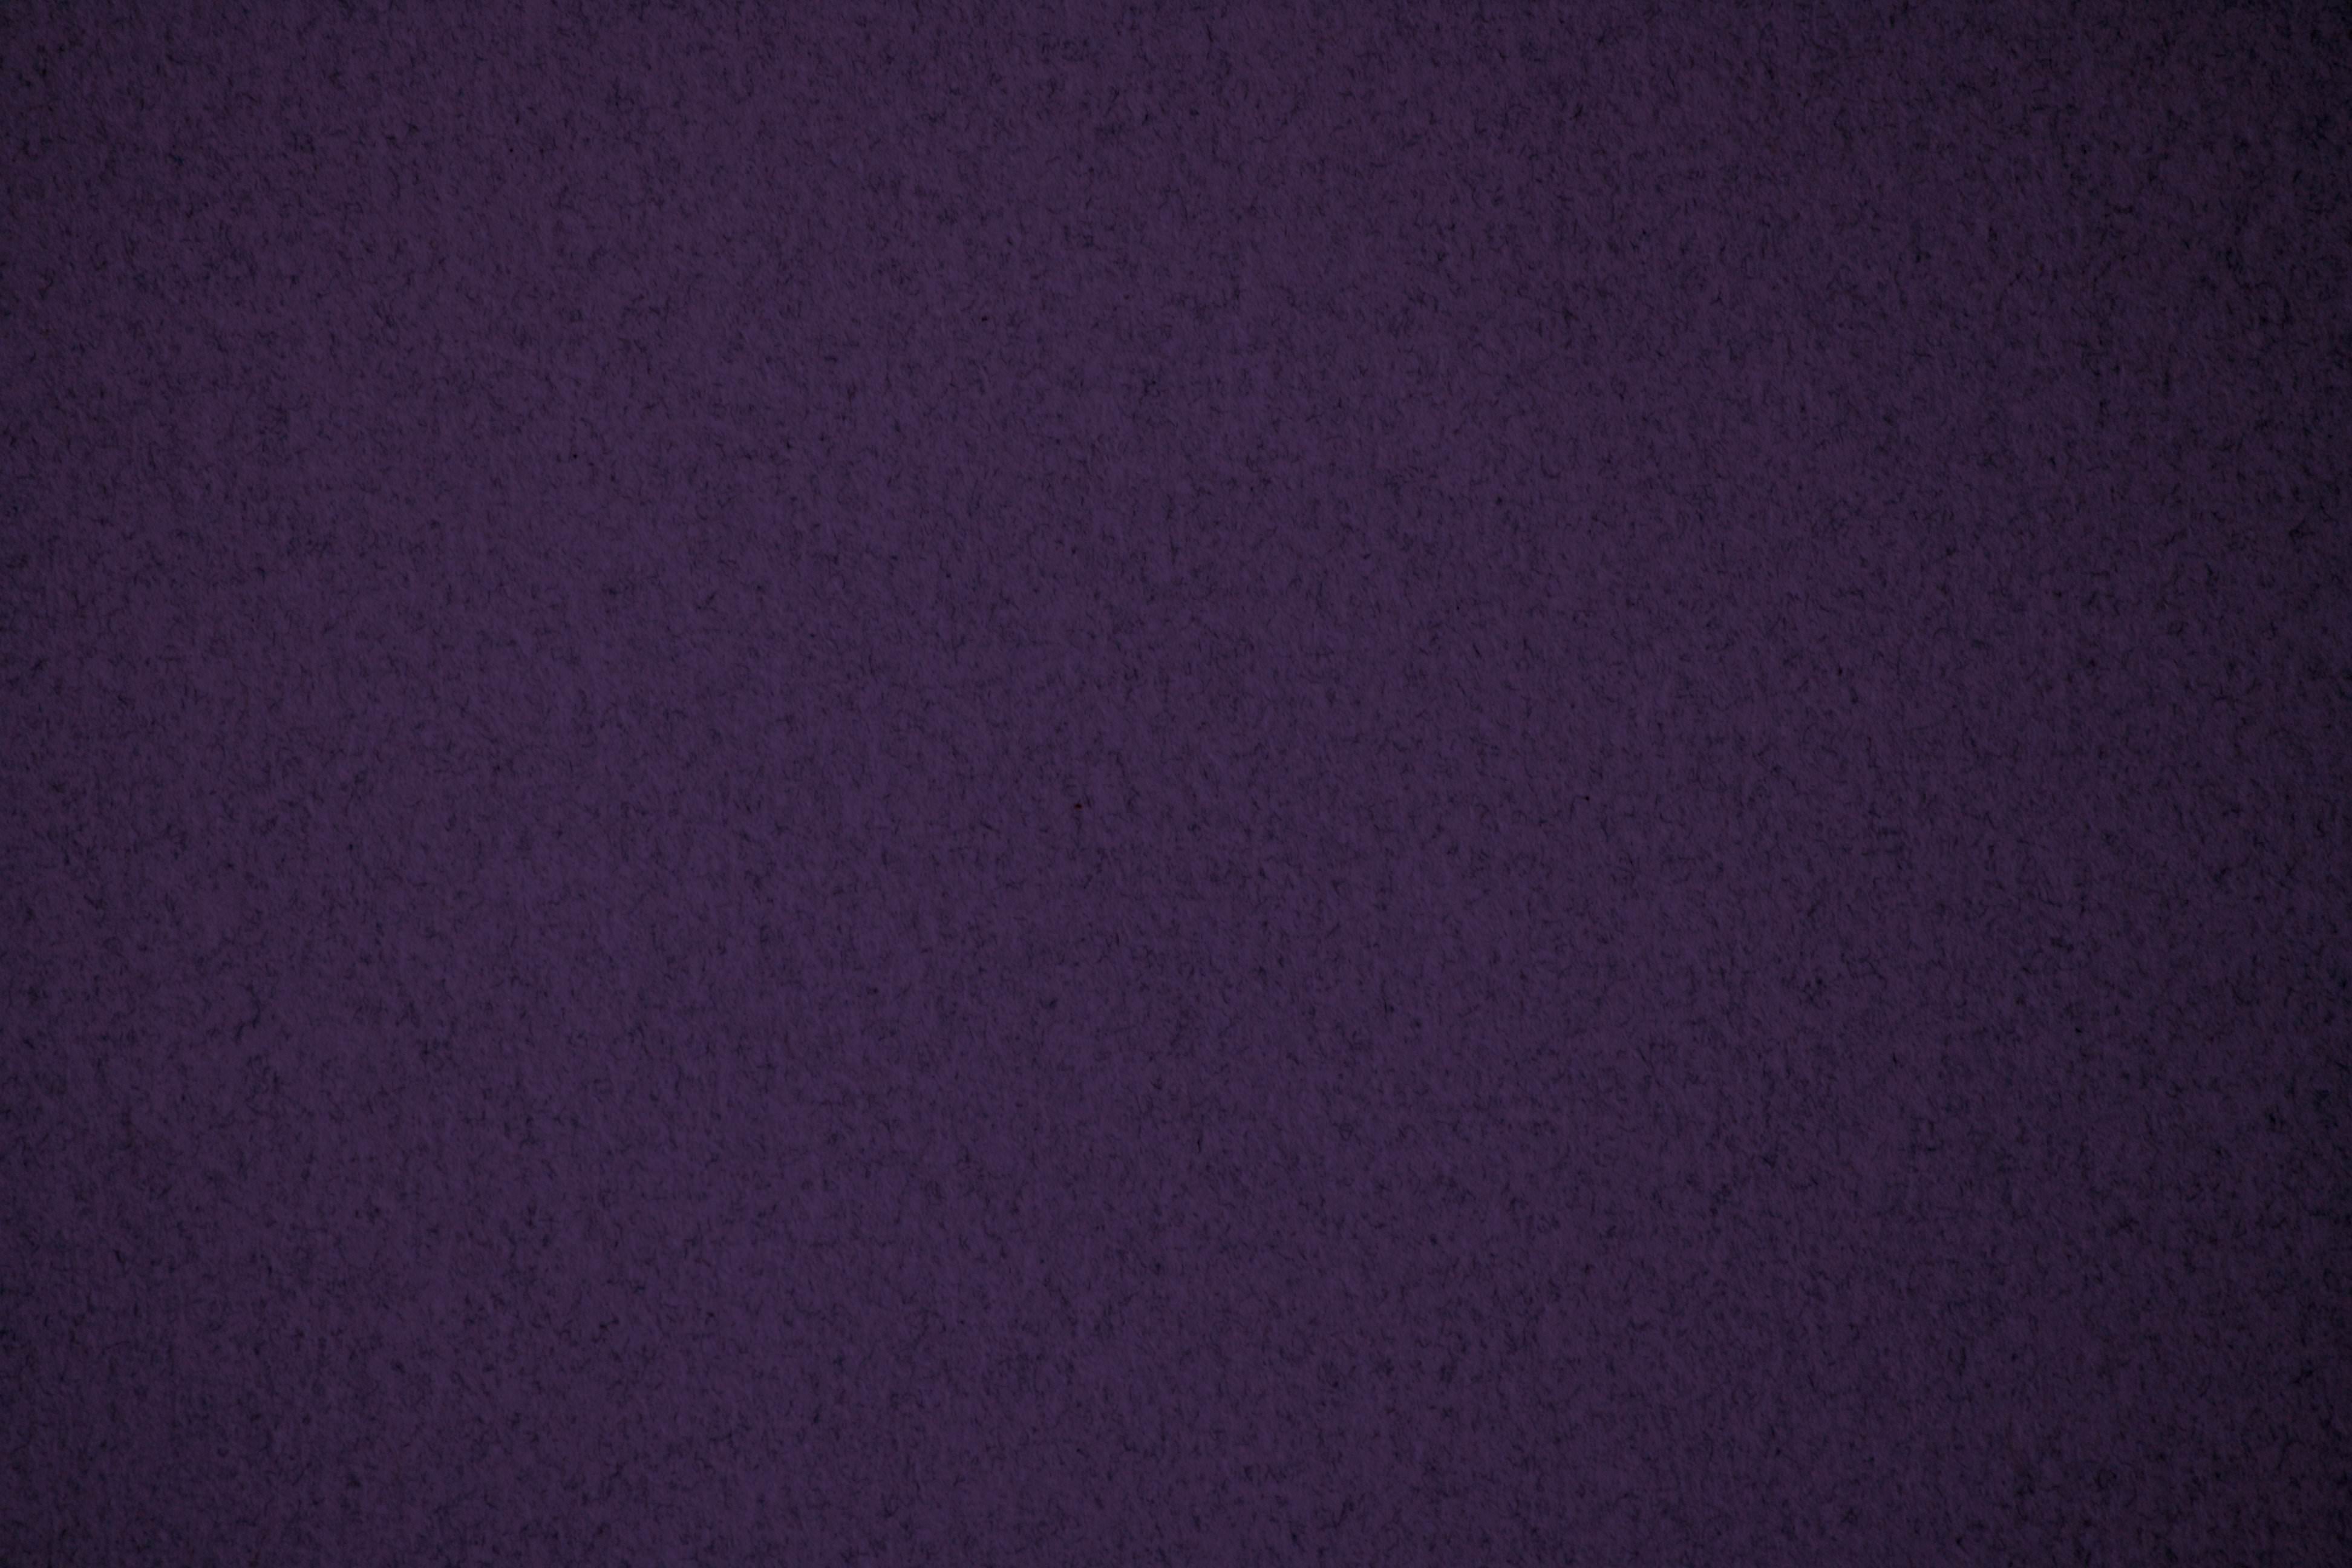 dark-purple-speckled-paper-texture